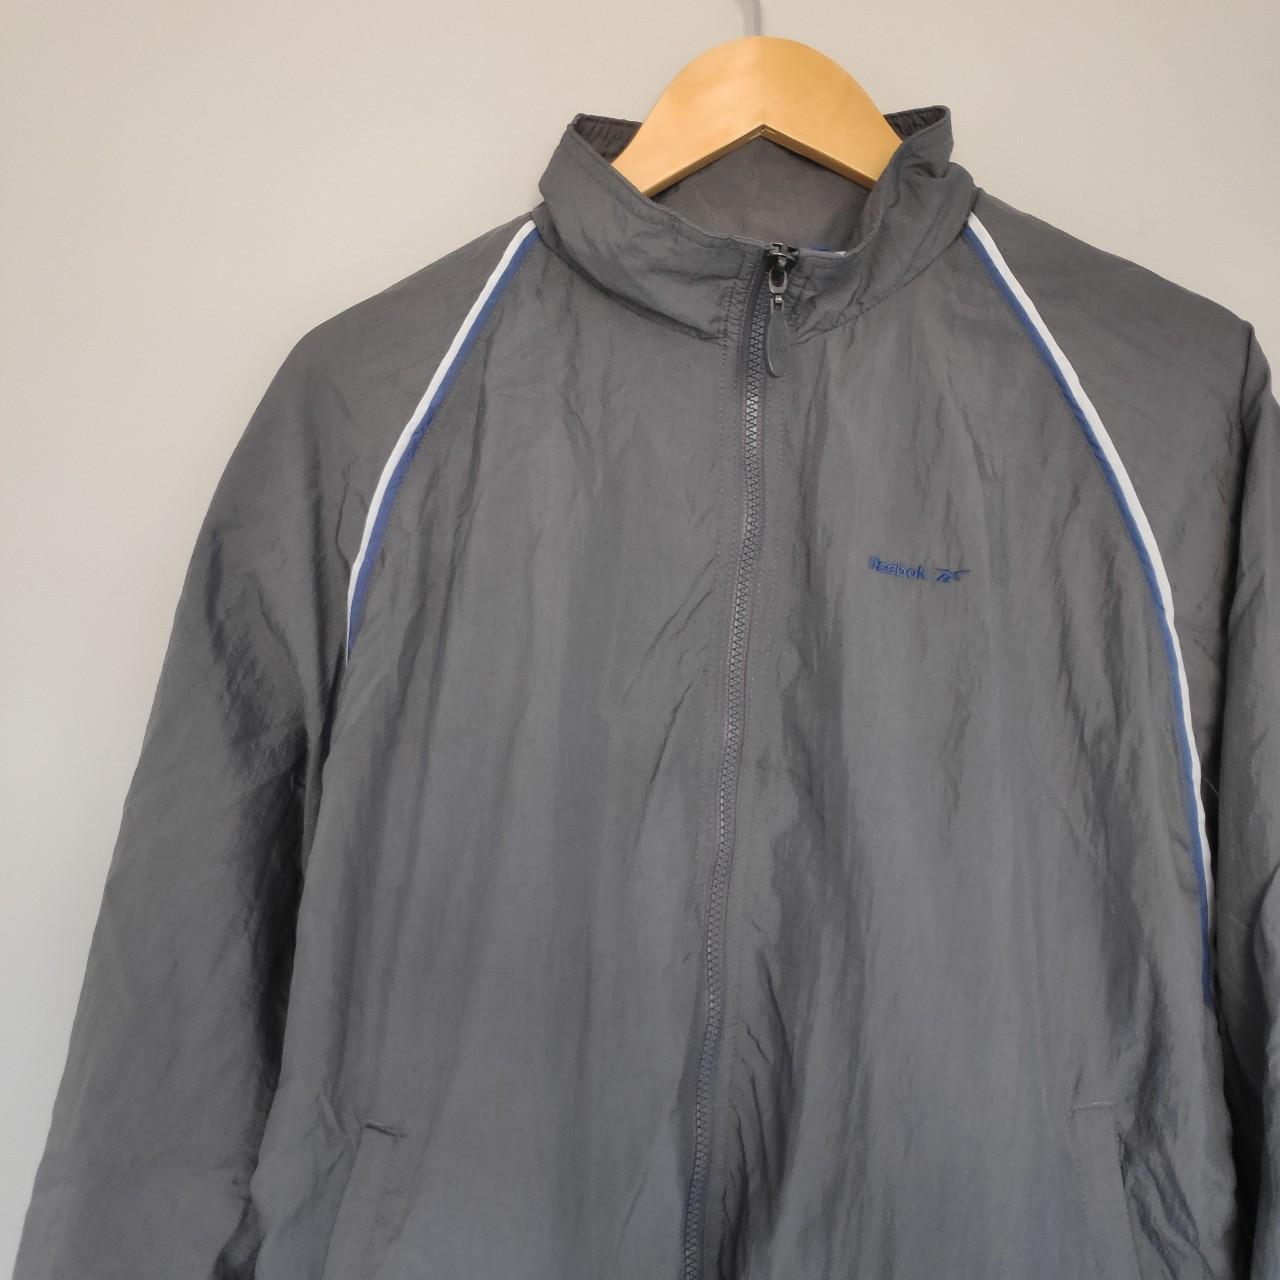 Vintage grey Reebok waterproof windbreaker jacket.... - Depop